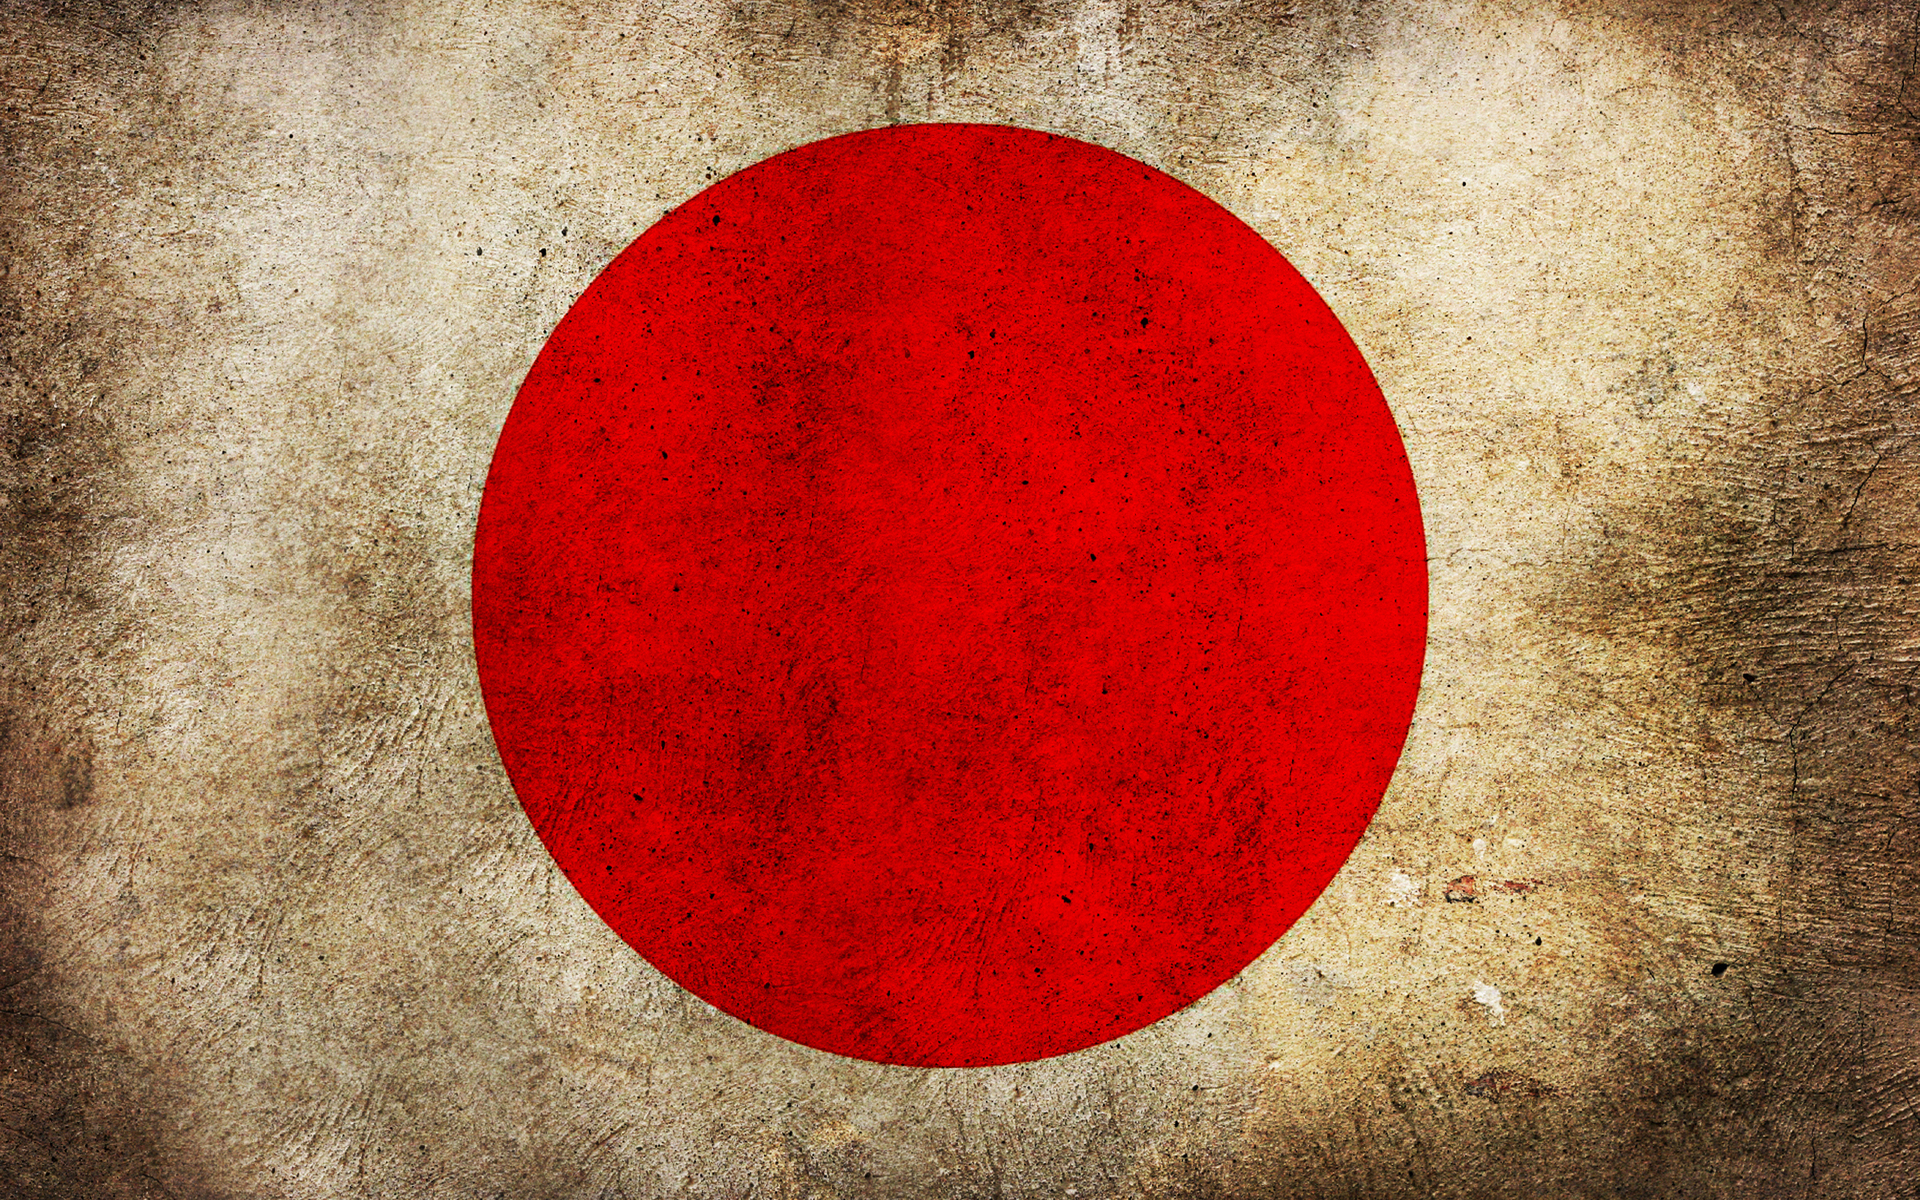 Japan flag, texture flag, background, flag background, Japan